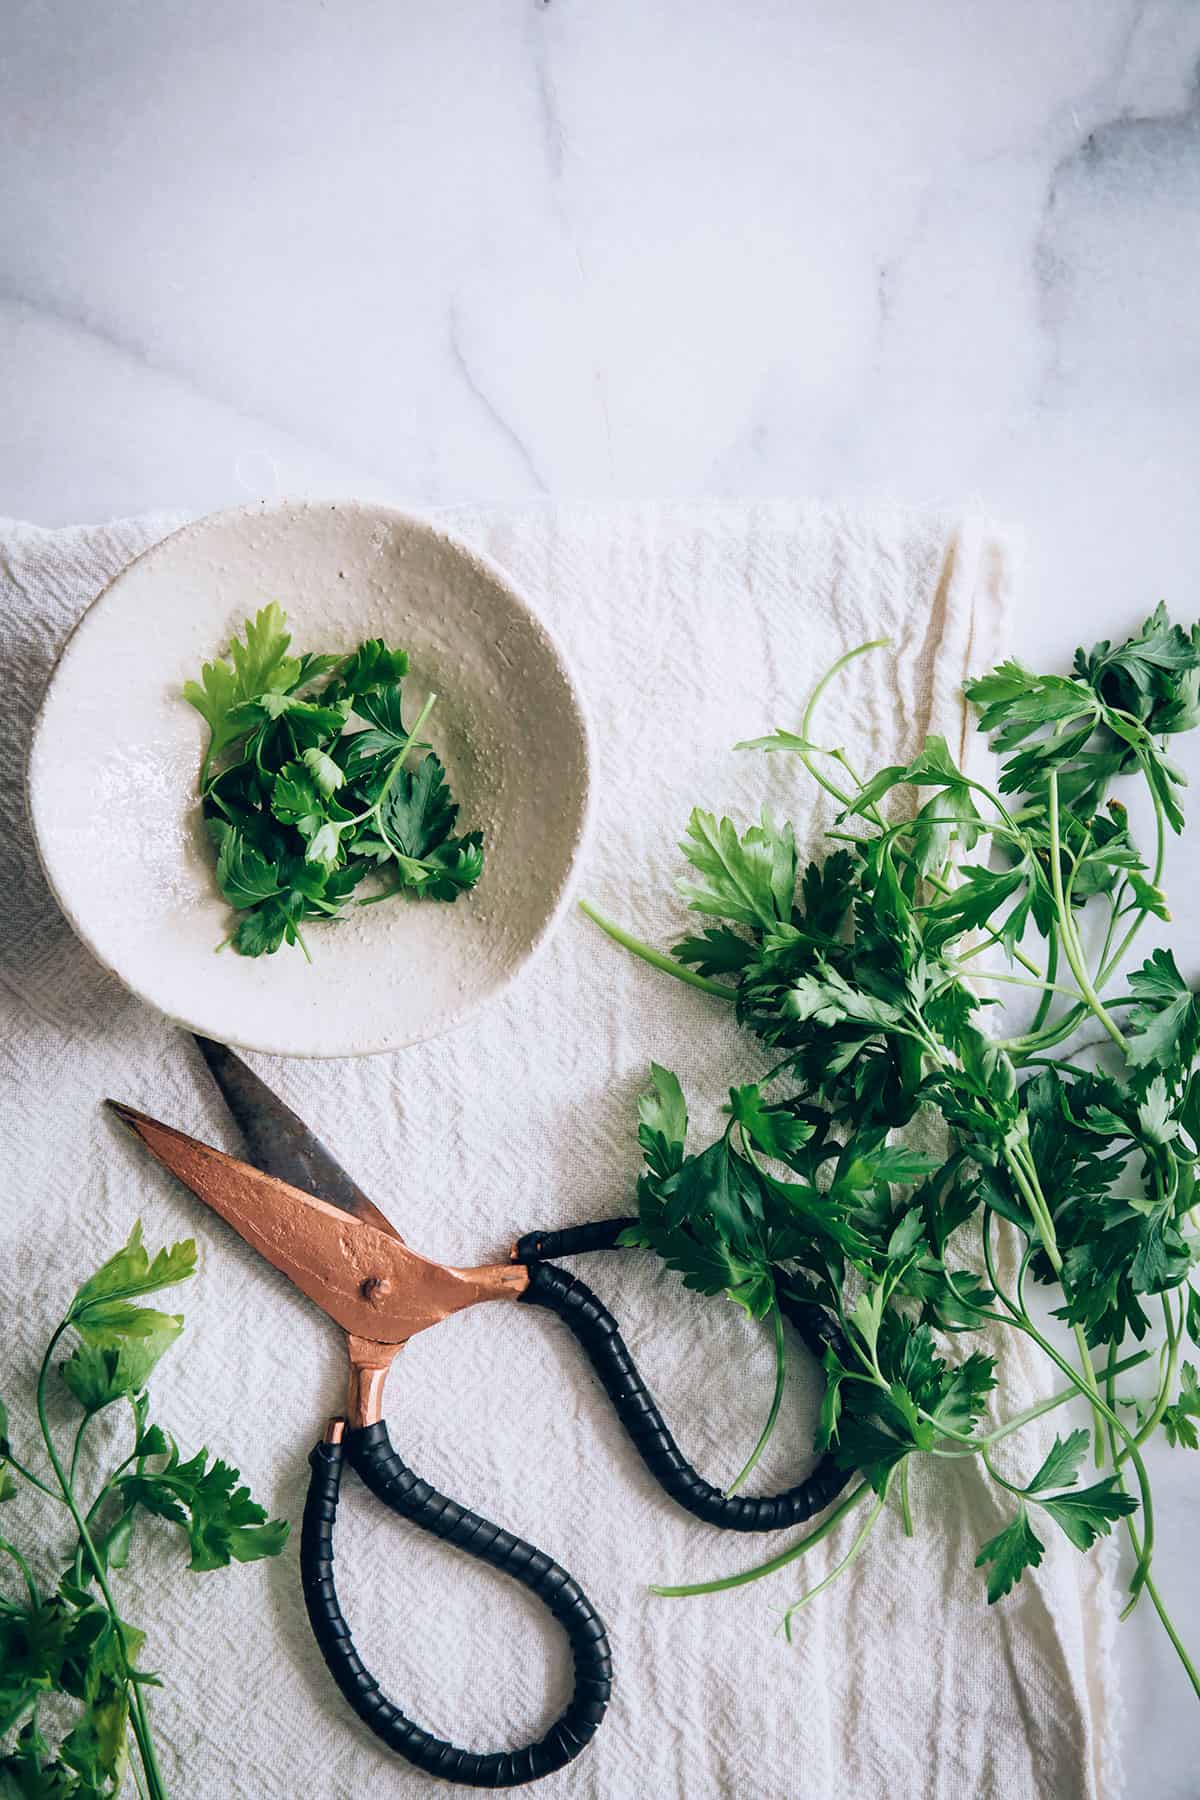 How to use cilantro